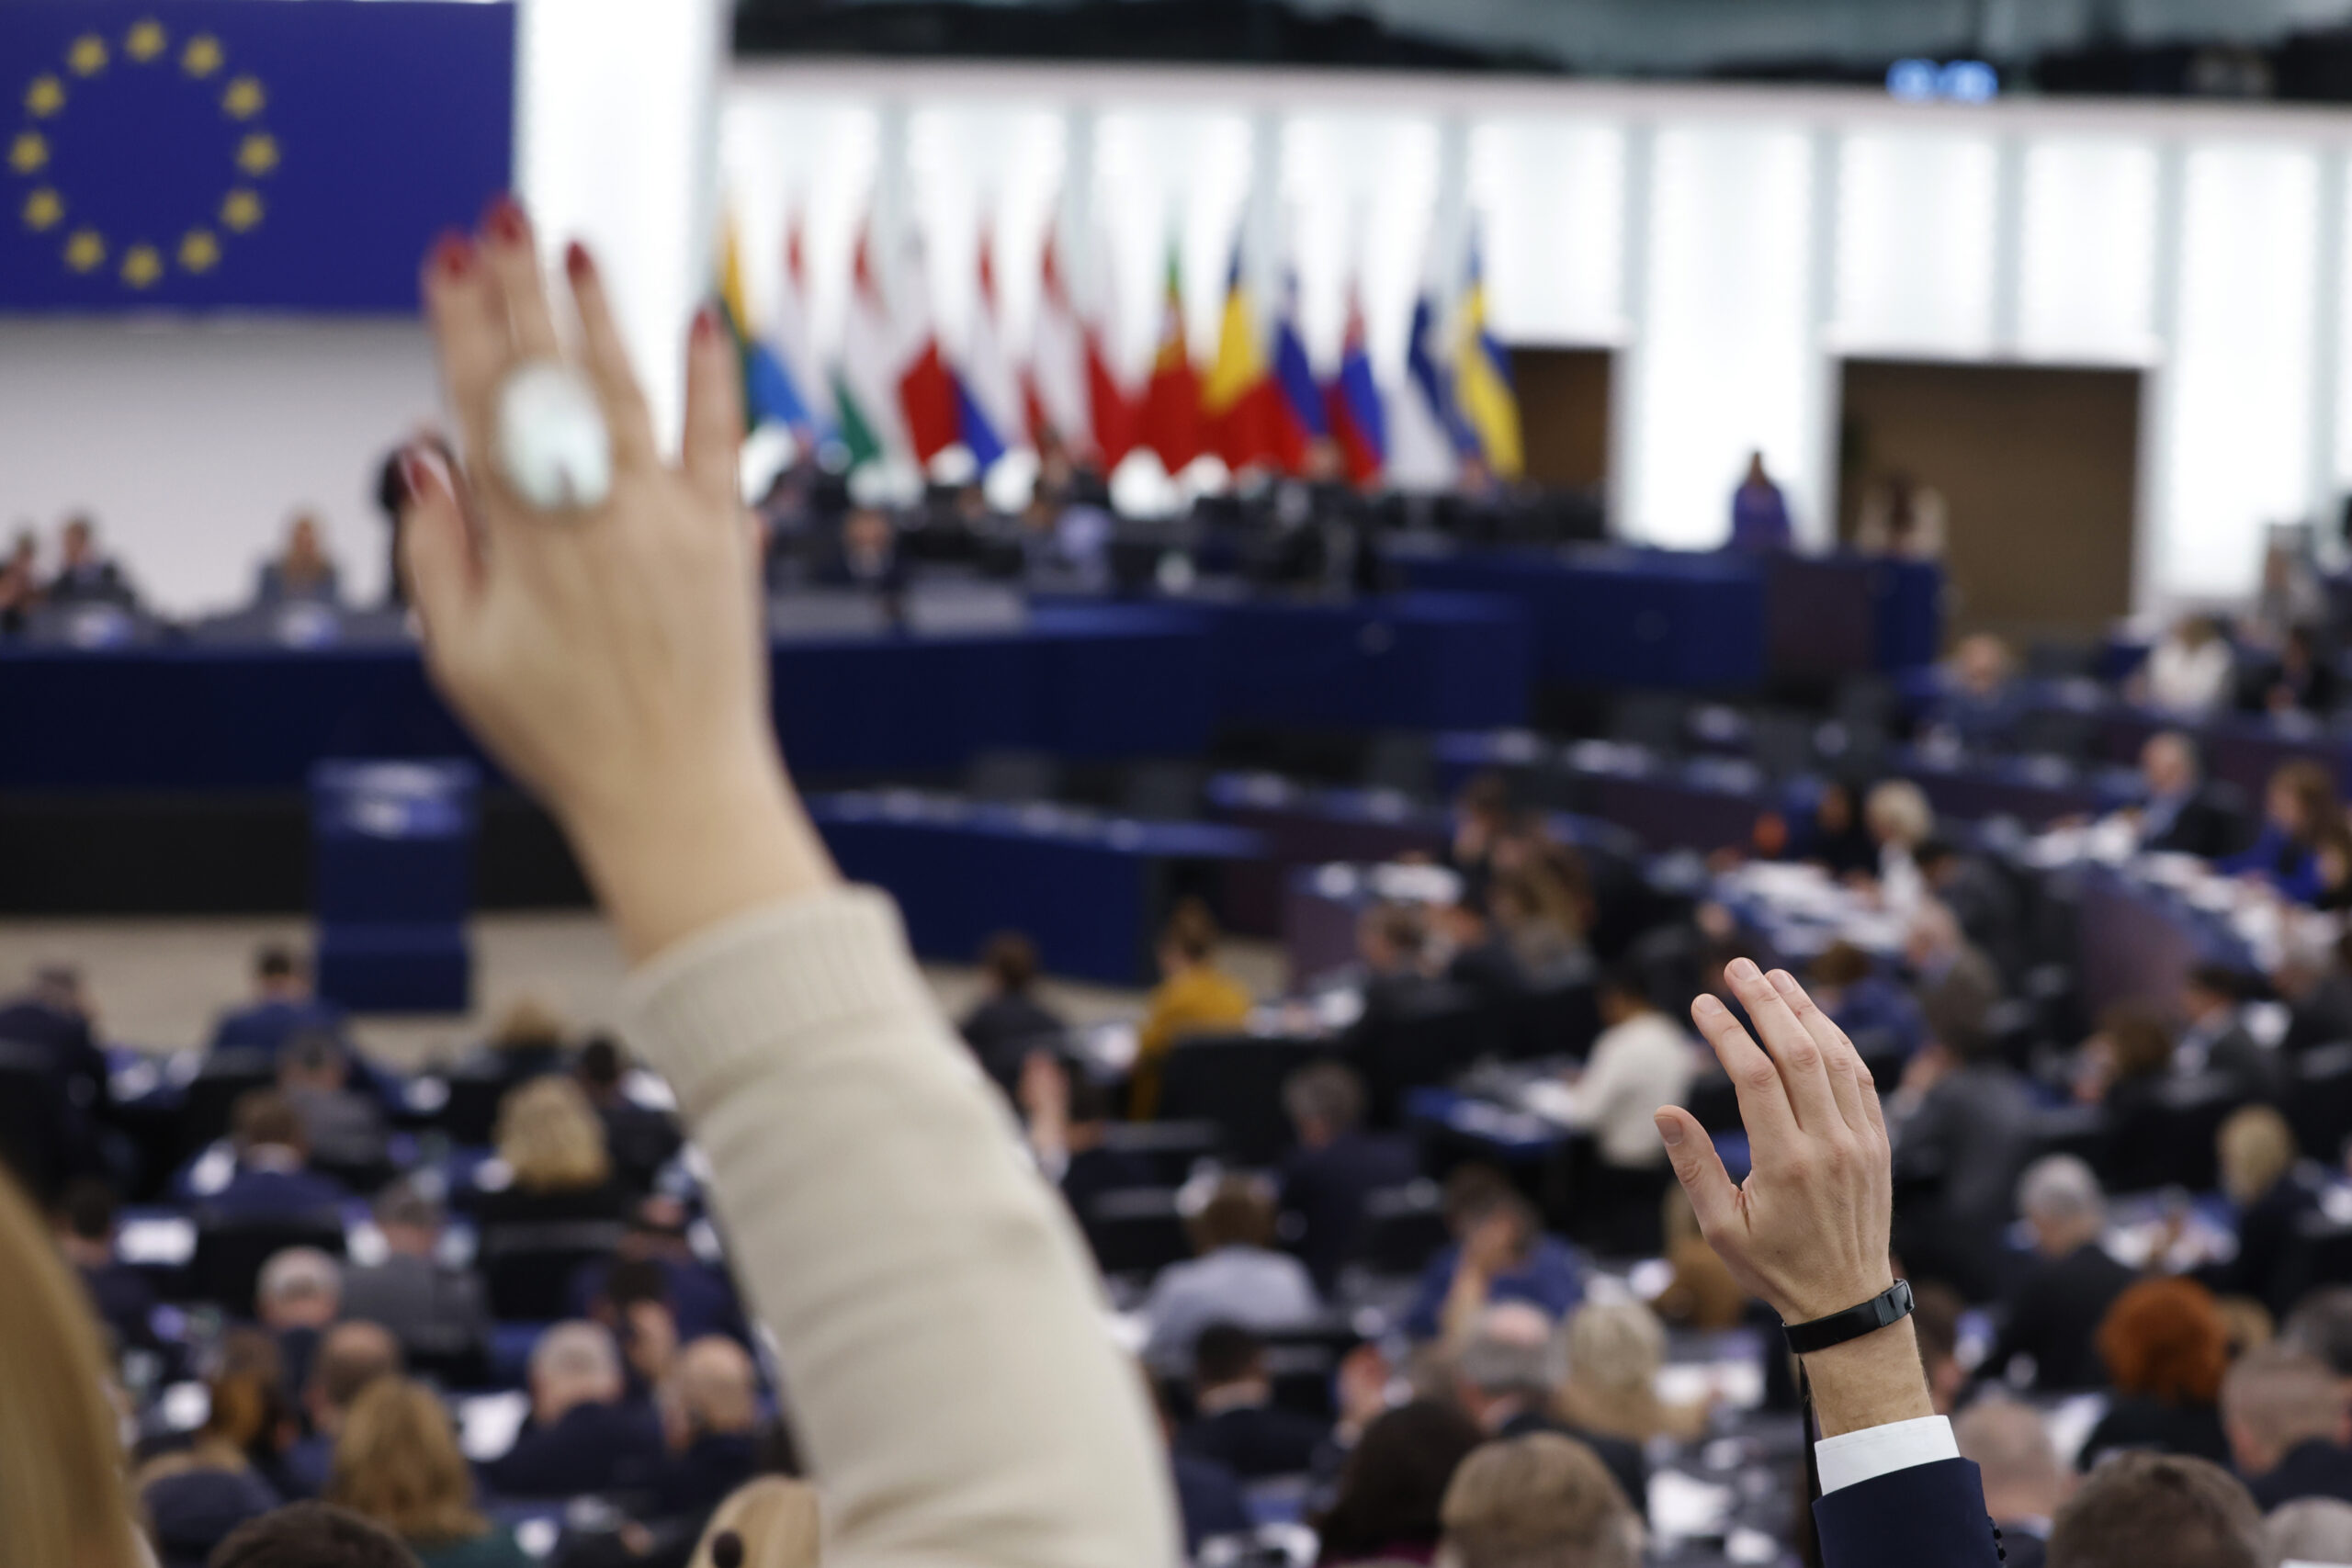 Ε.Ε: “Πράσινο φως” στο Ευρωκοινοβούλιο να ψηφίσει την ένταξη στη σύμβαση της Κωνσταντινούπολης